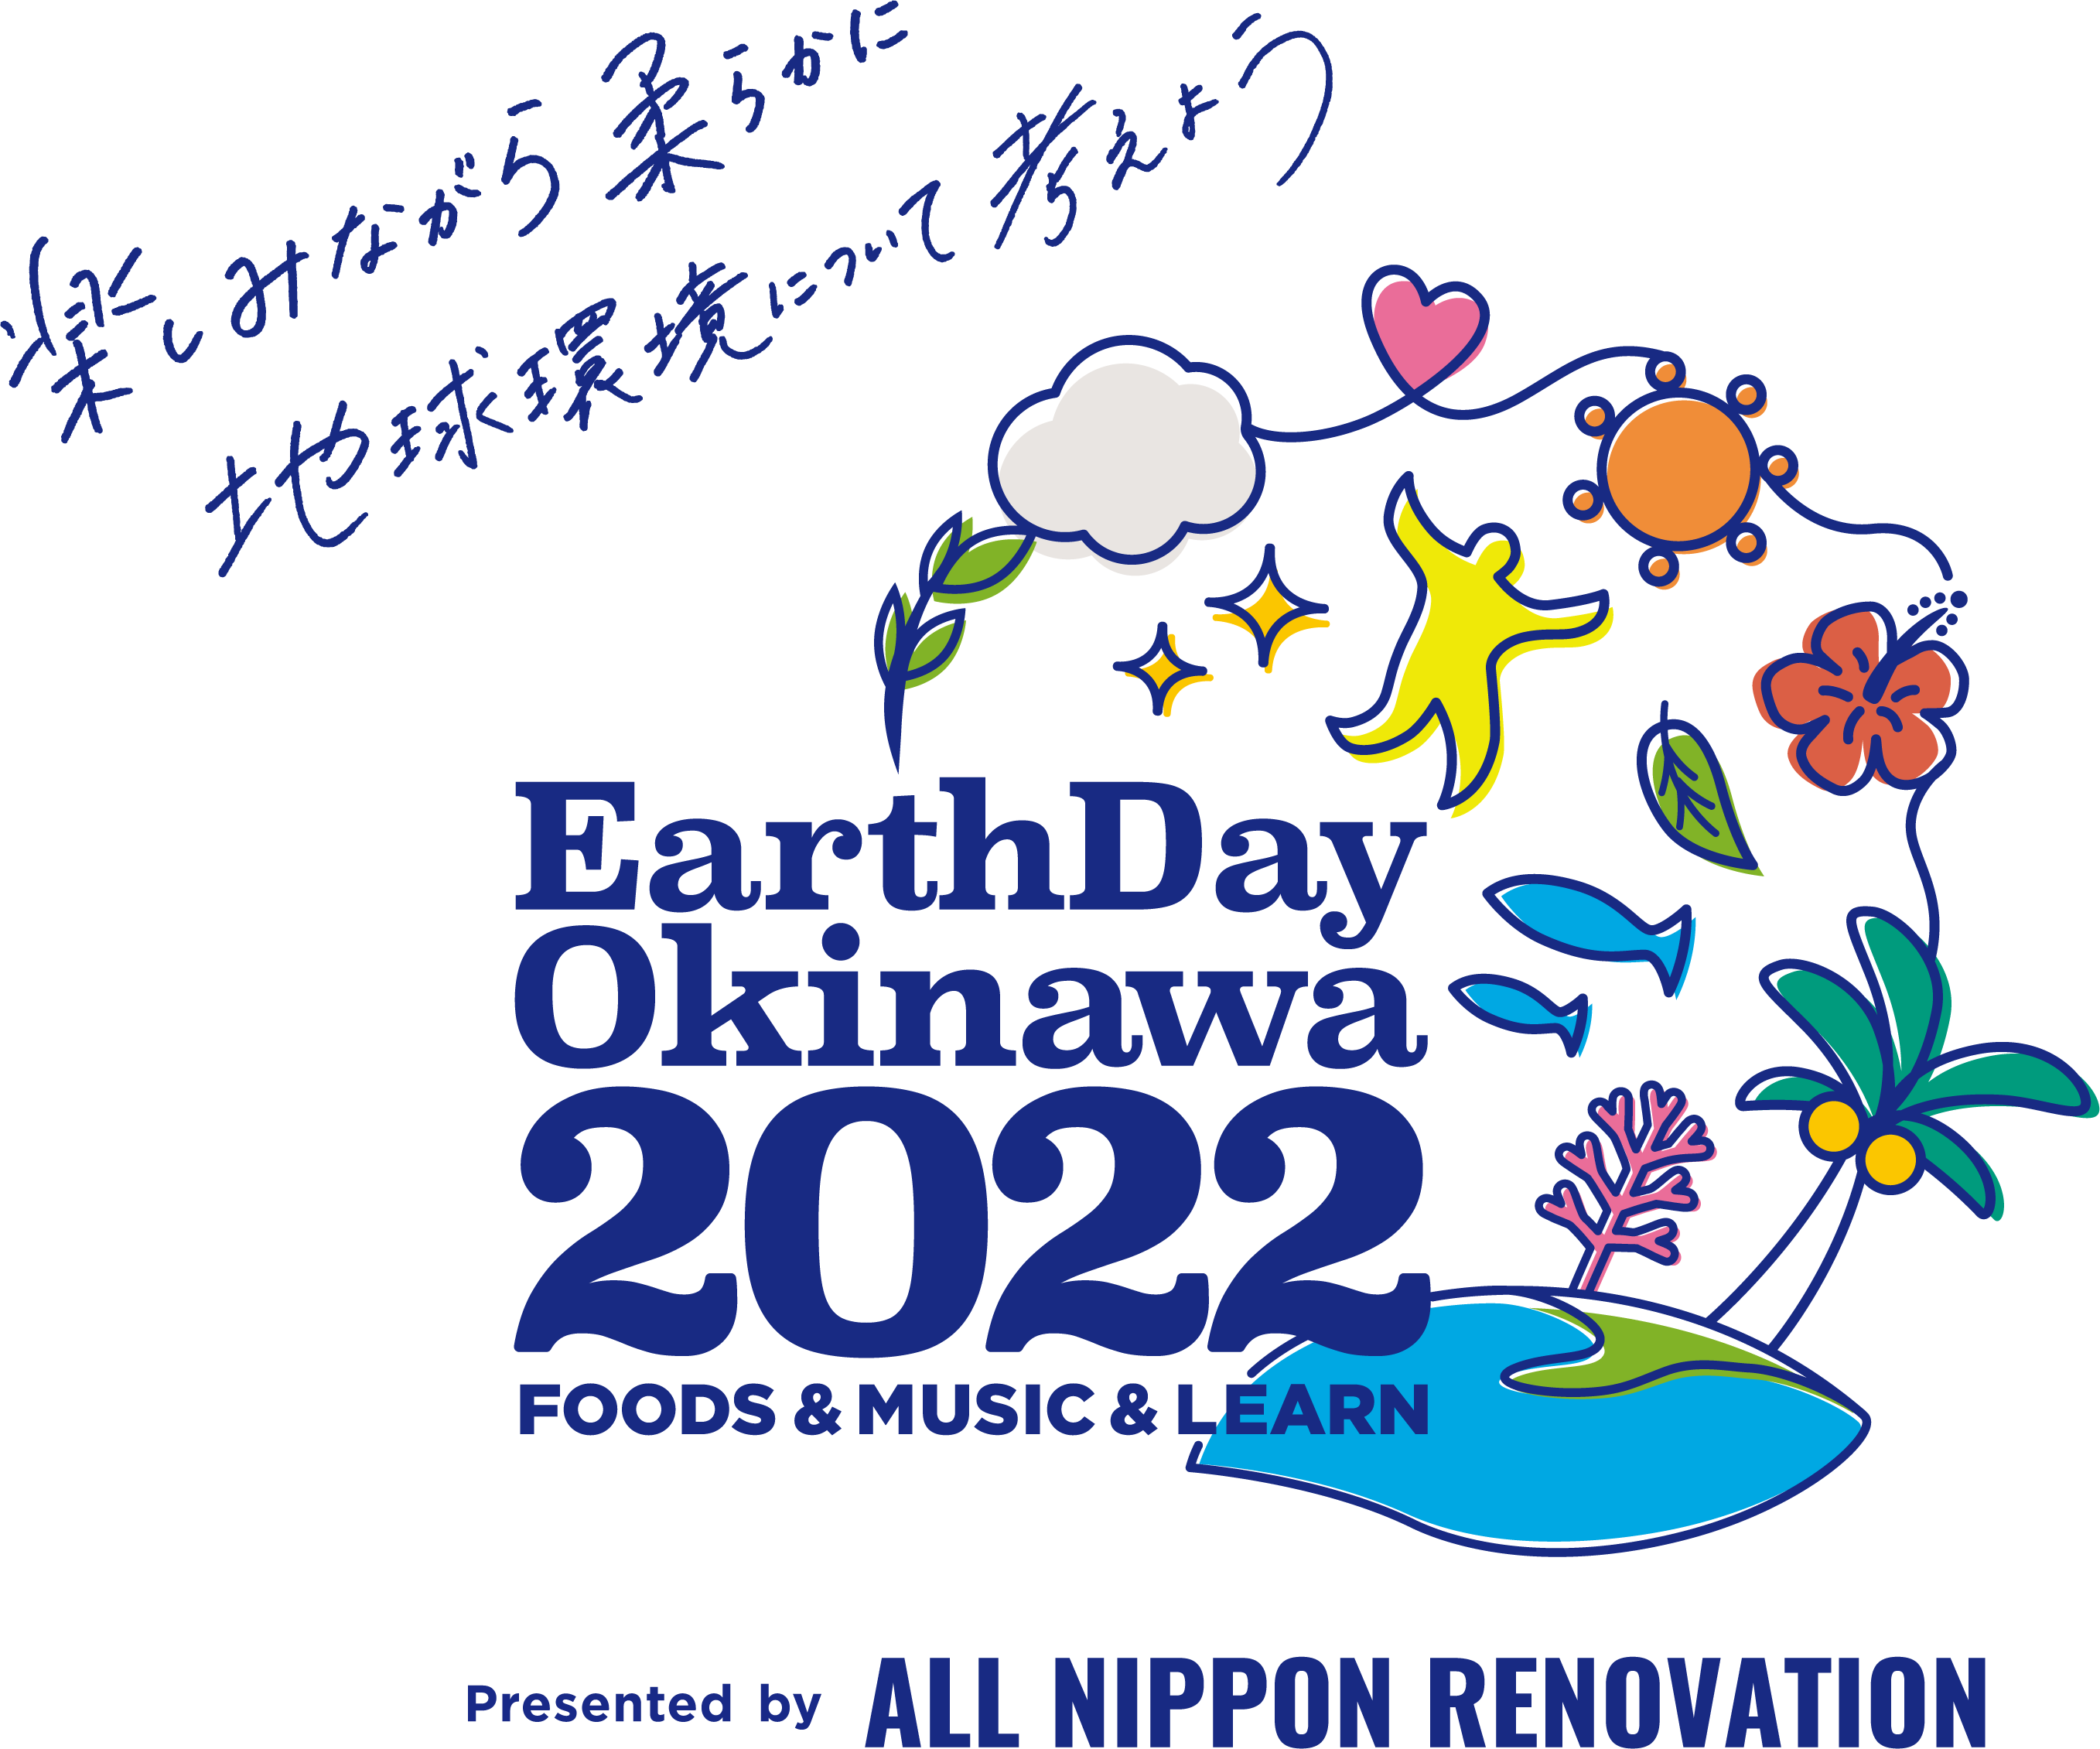 「Earth Day Okinawa2022」へ出展します。